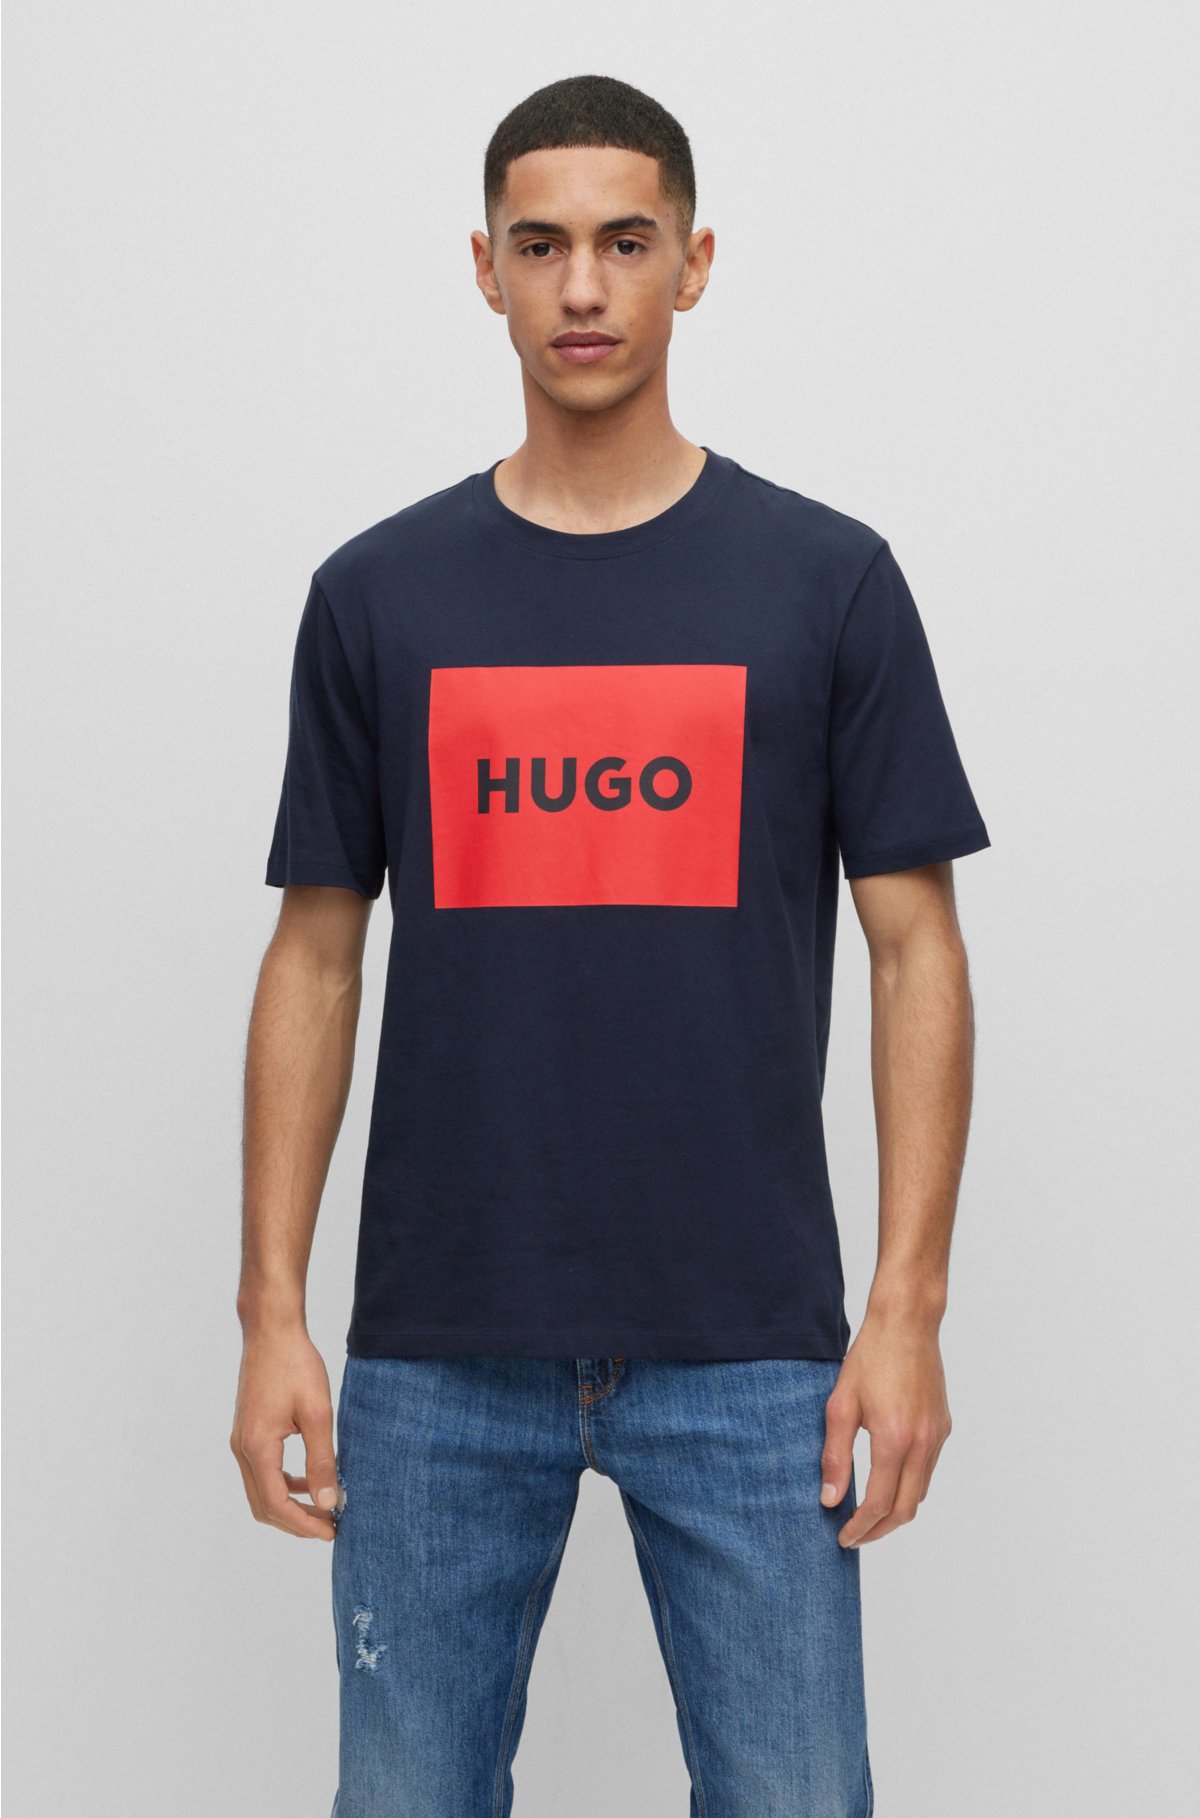 HUGO - コットンジャージー レギュラーフィットTシャツ ロゴプリント